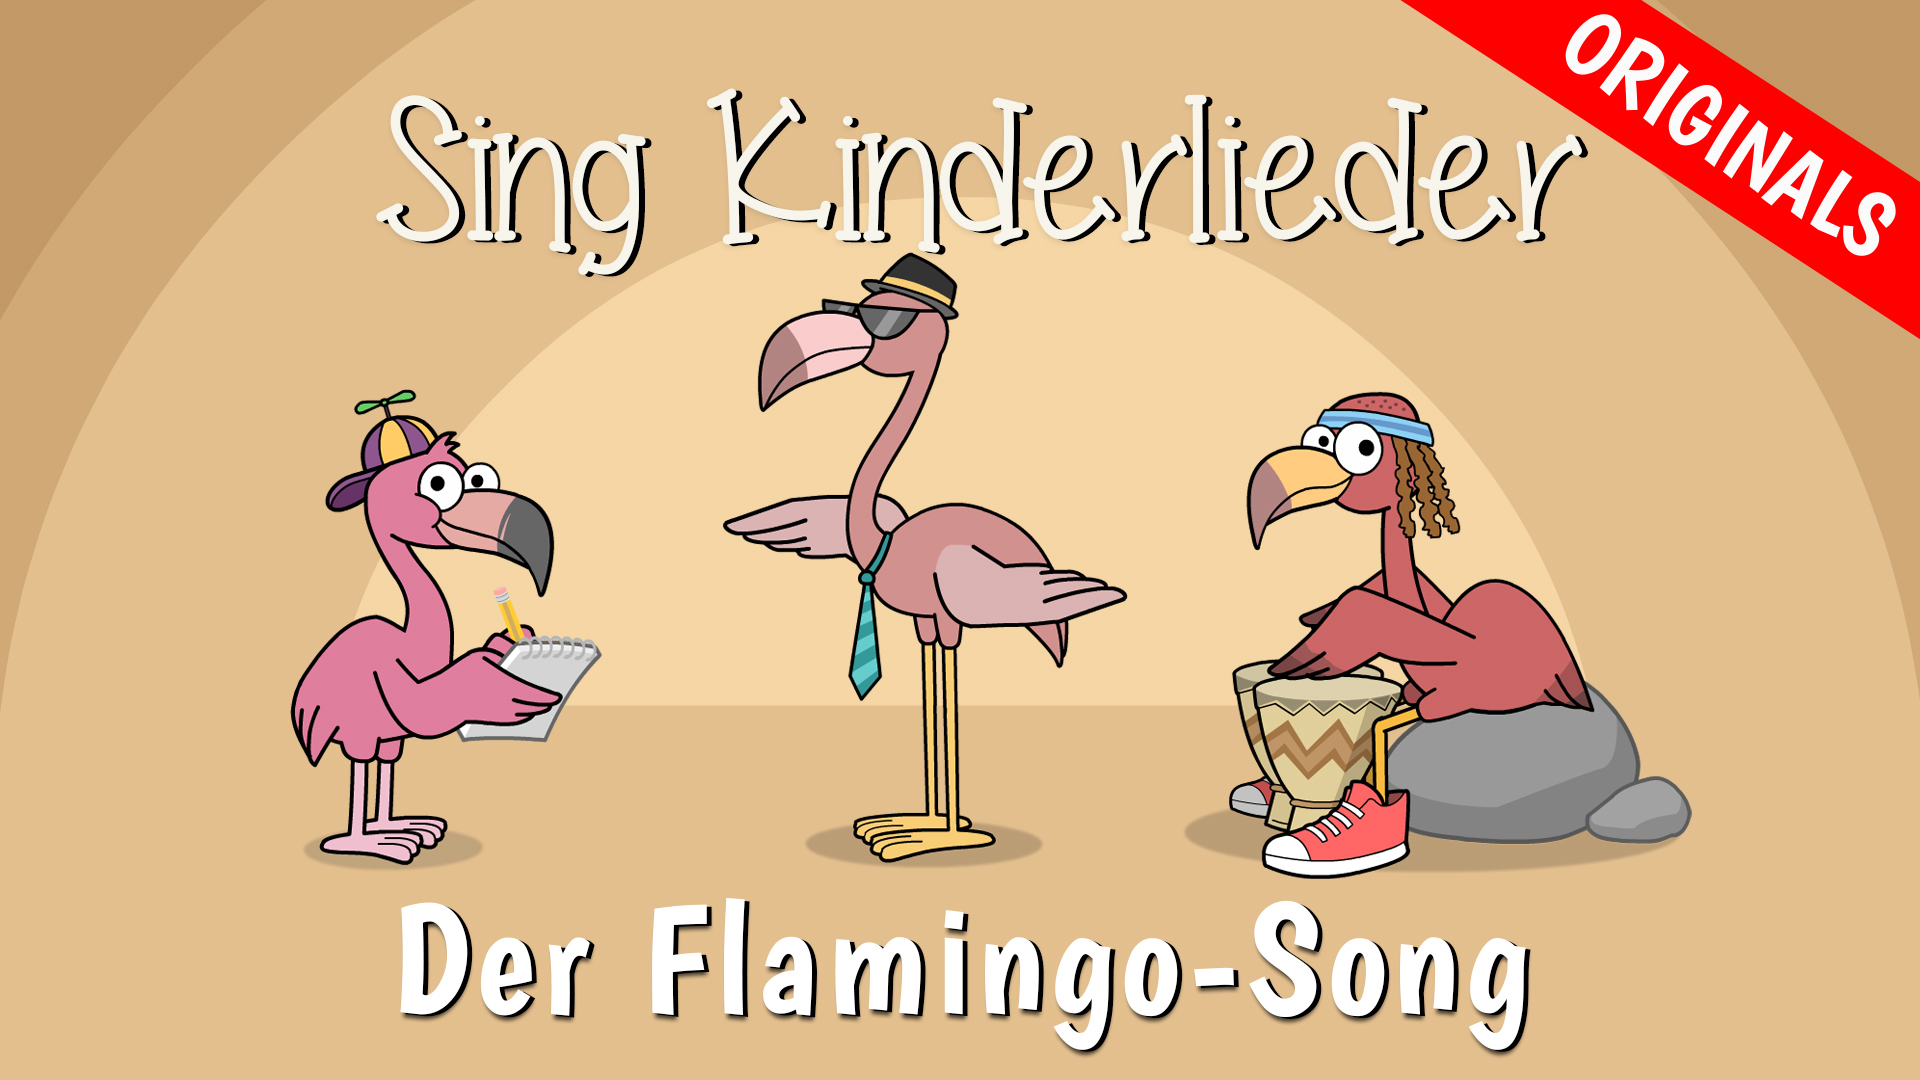 Der Flamingo-Song